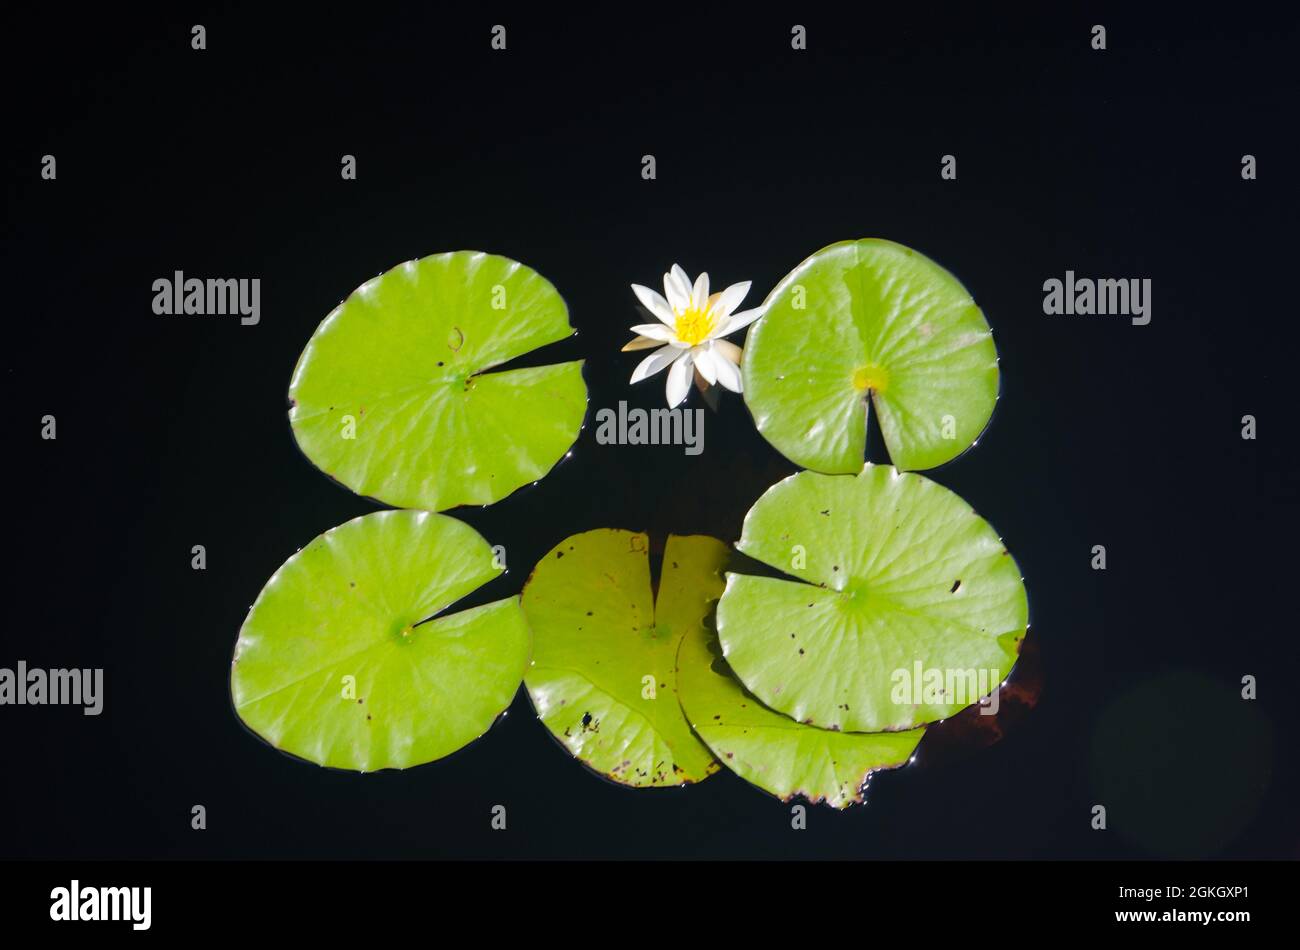 Lilly pads semi-simmertricamente dispuestos alrededor de una flor, Florida, EE.UU. Foto de stock